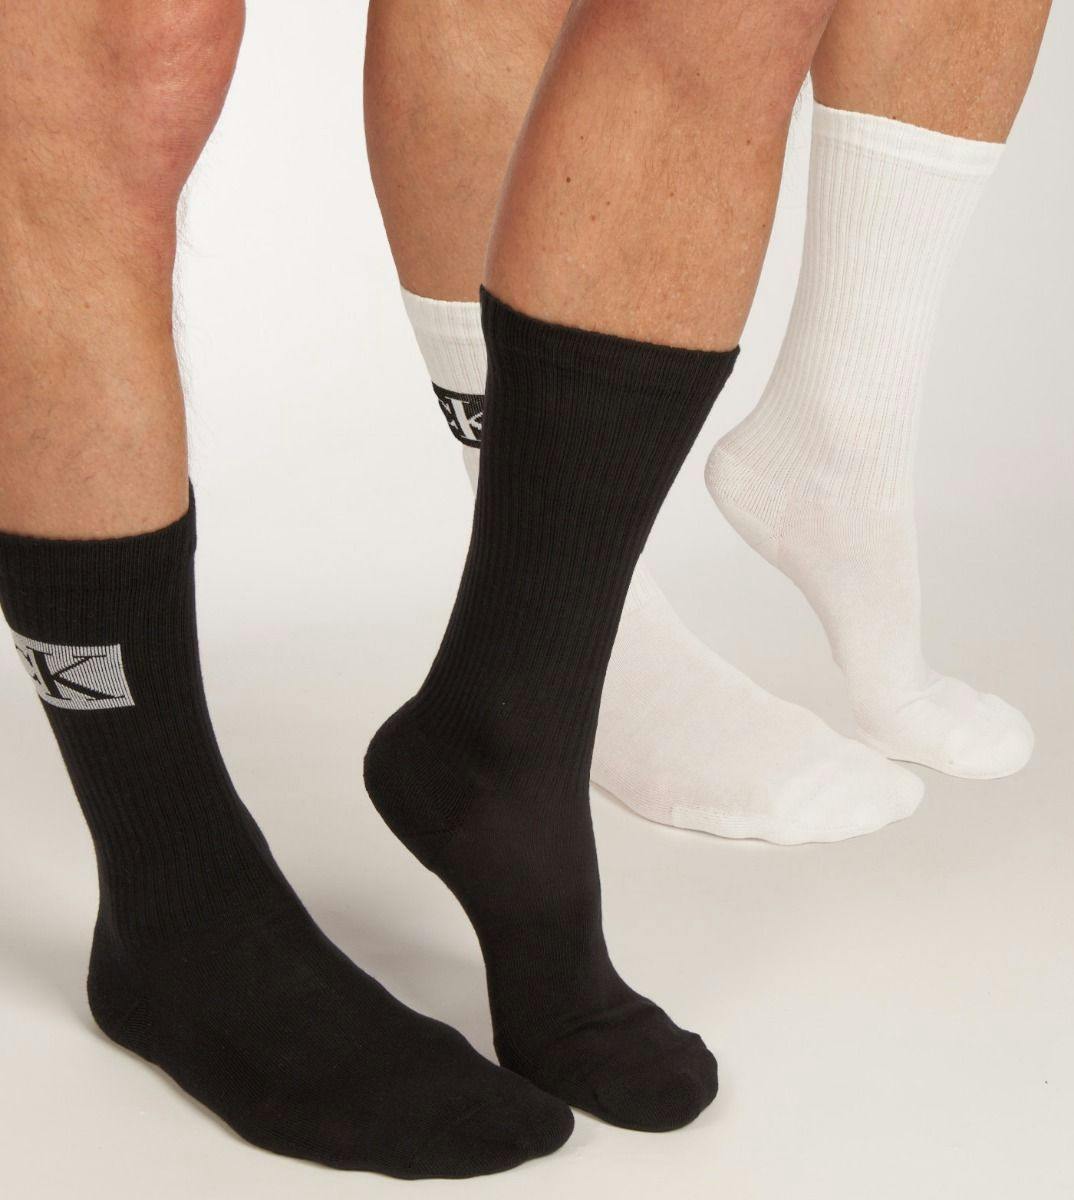 Dialoog inspanning Maak plaats Calvin Klein sokken 2 paar Sock Badge H 701223260-001